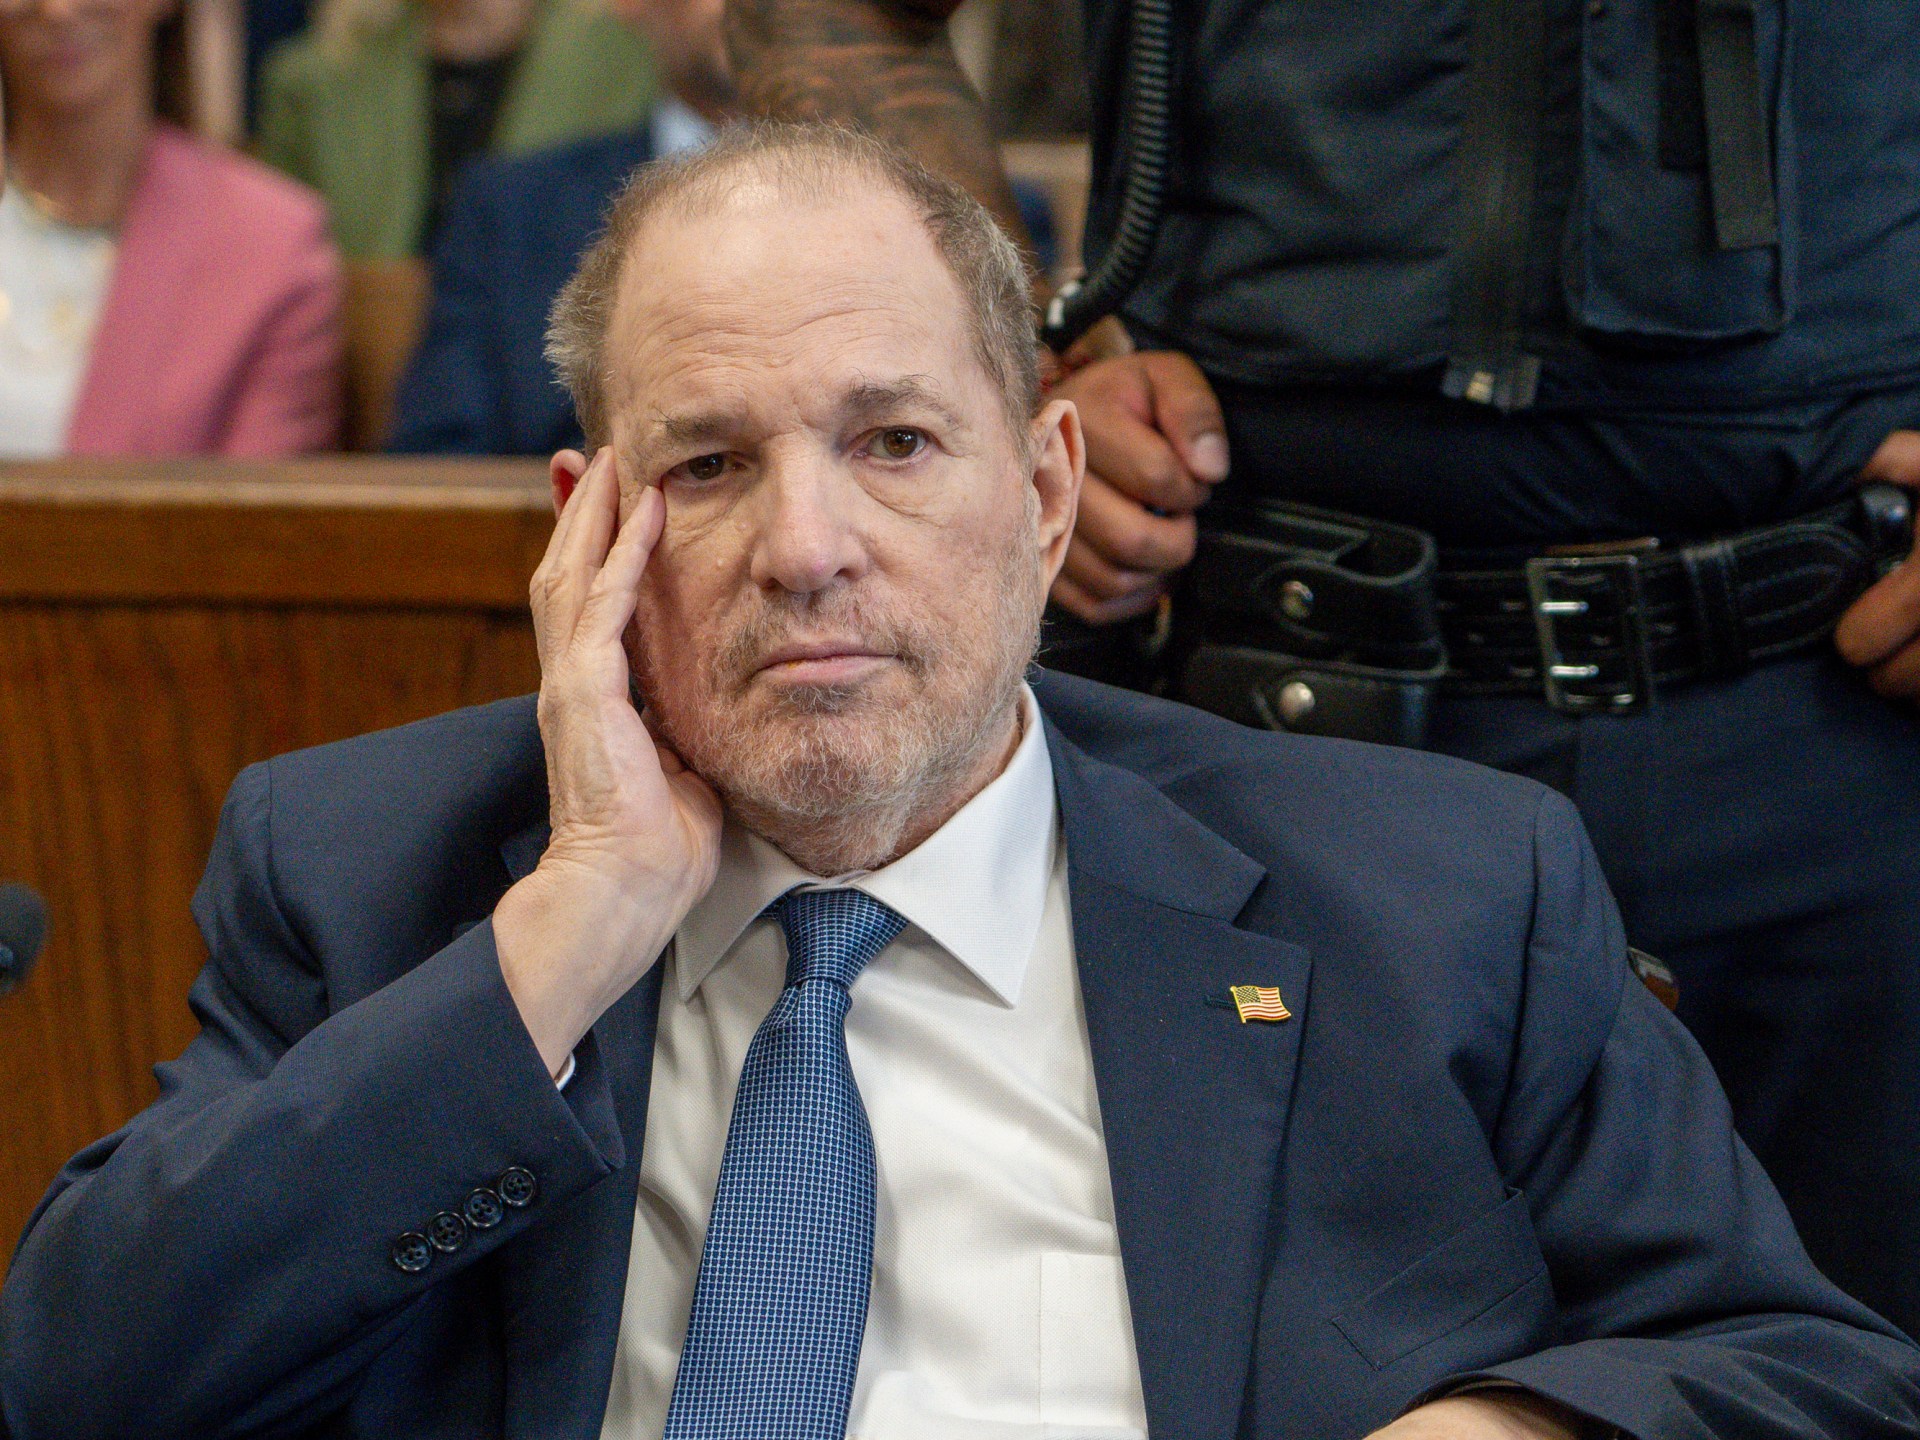 Les procureurs de Manhattan annoncent un nouveau procès pour le producteur de films Harvey Weinstein |  Nouvelles sur les agressions sexuelles